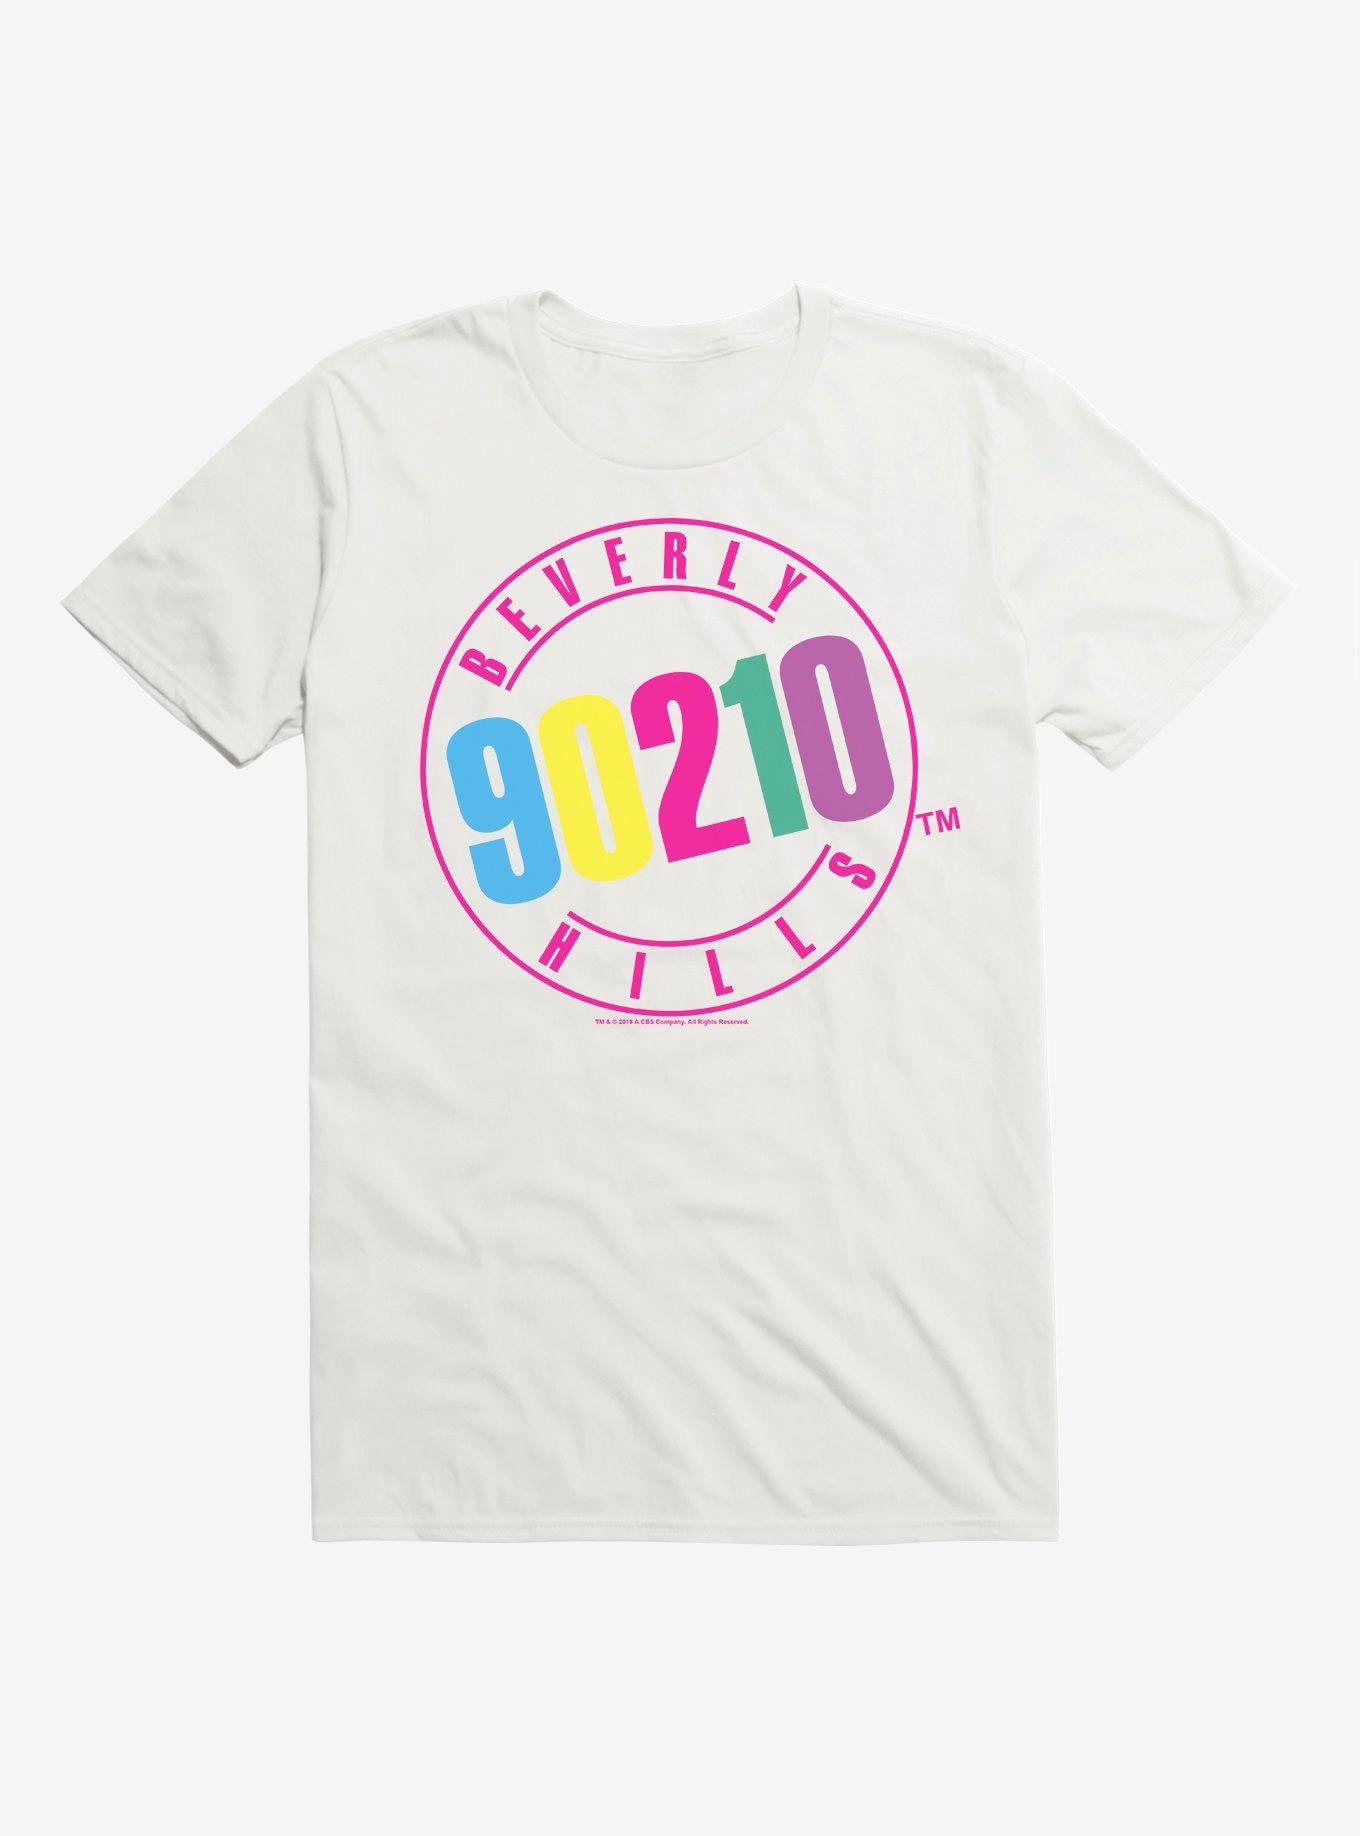 90210 Logo - Beverly Hills 90210 Logo T-Shirt